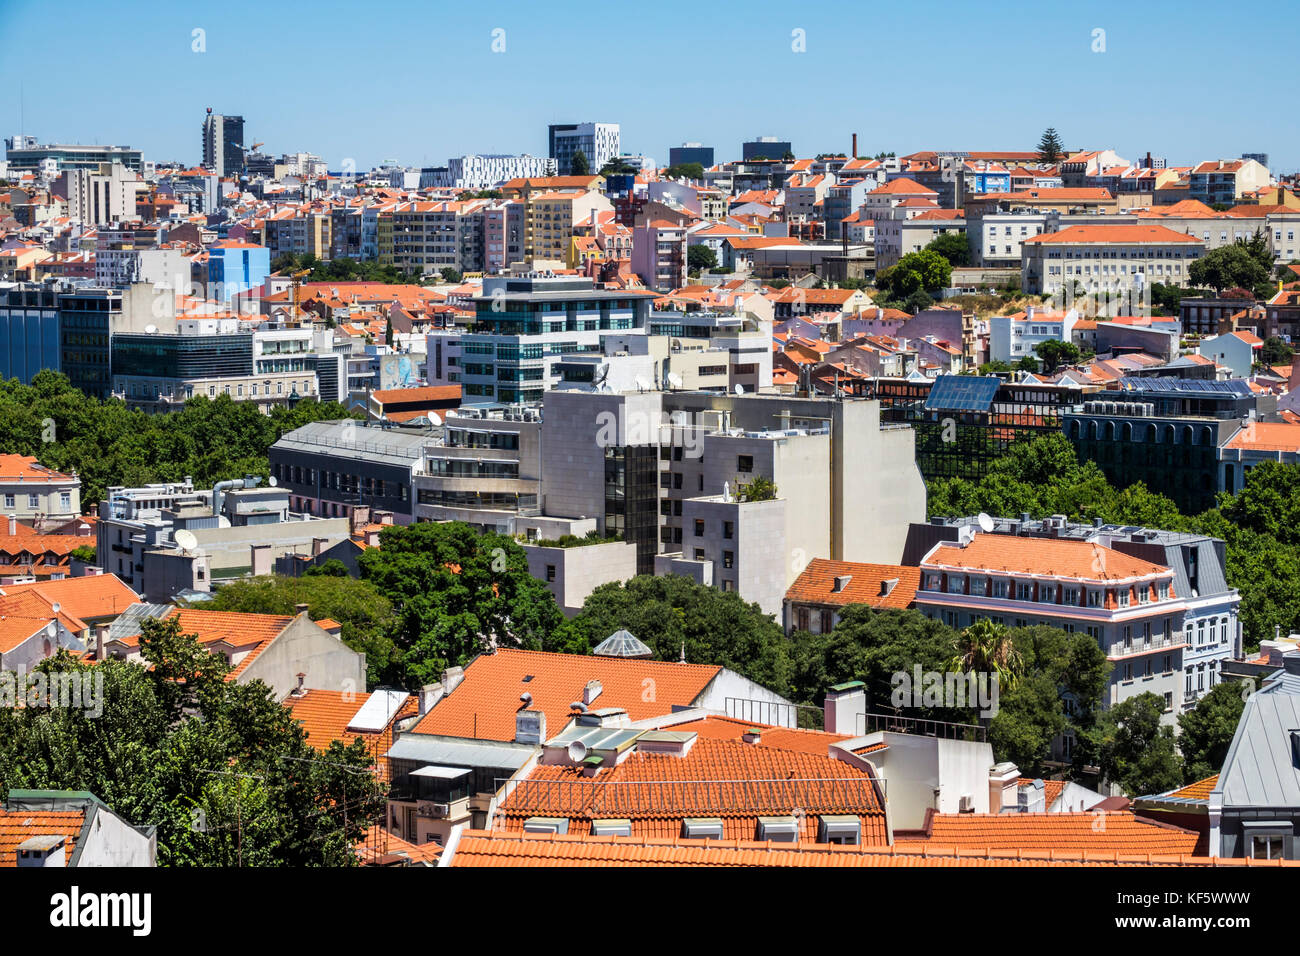 Lisbonne Portugal, Bairro Alto, quartier historique, principe Real, point de vue pittoresque, vue sur la ville, toits, bâtiments, Baixa Pombalina, hispanique, immigra Banque D'Images